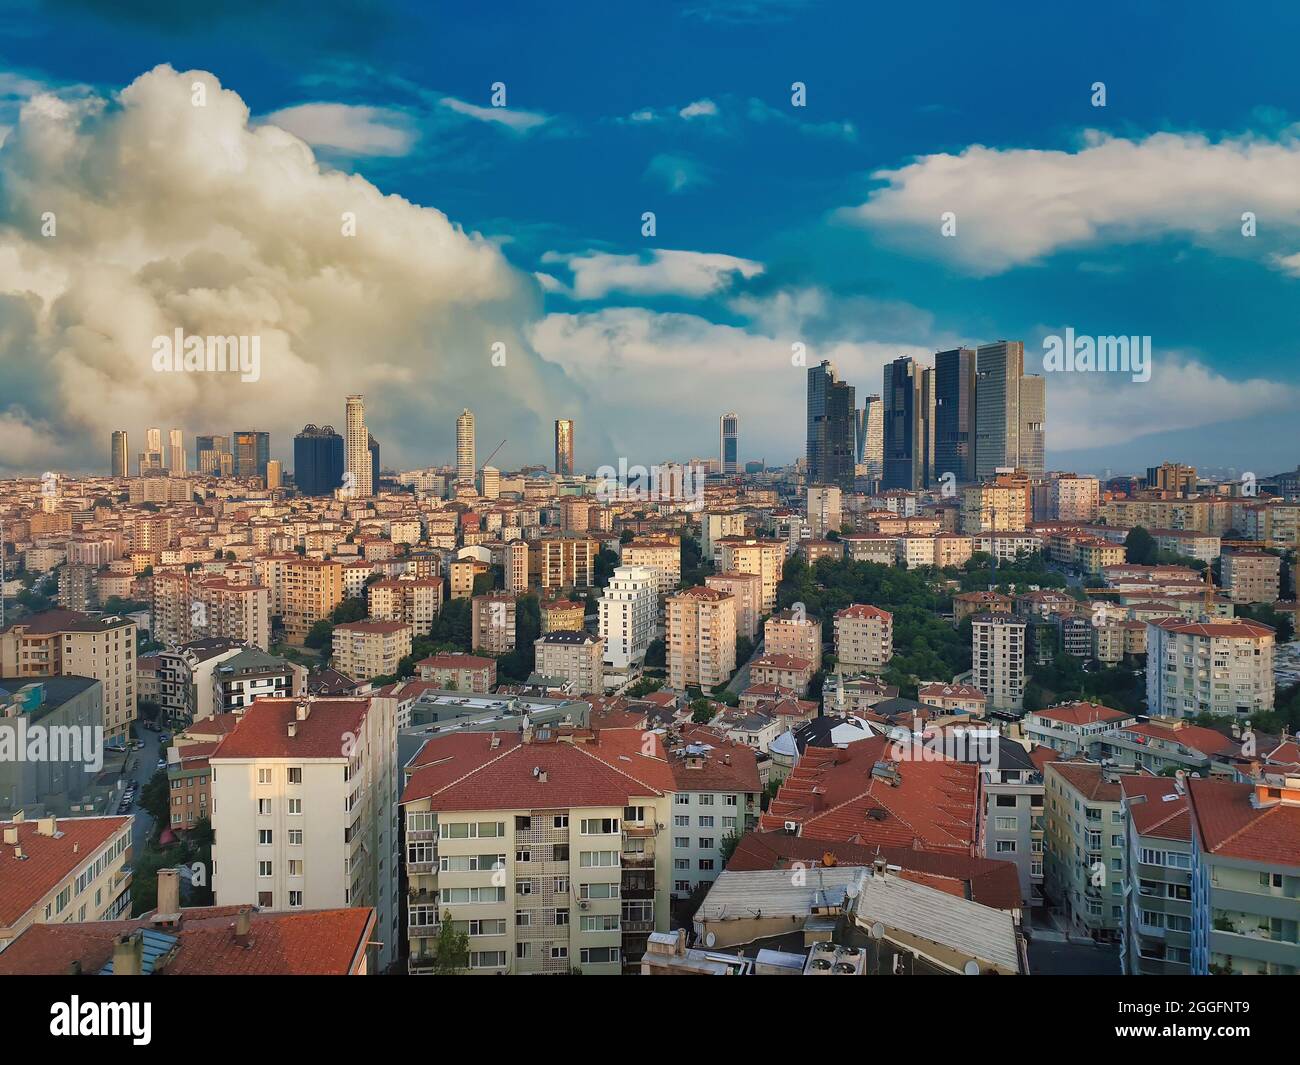 Die starke Zersiedelung und das Bevölkerungswachstum machen Istanbul zu einer der am schwersten zu bewohnenden Städte. Chaotische Urbanisierung in Istanbul. Stockfoto